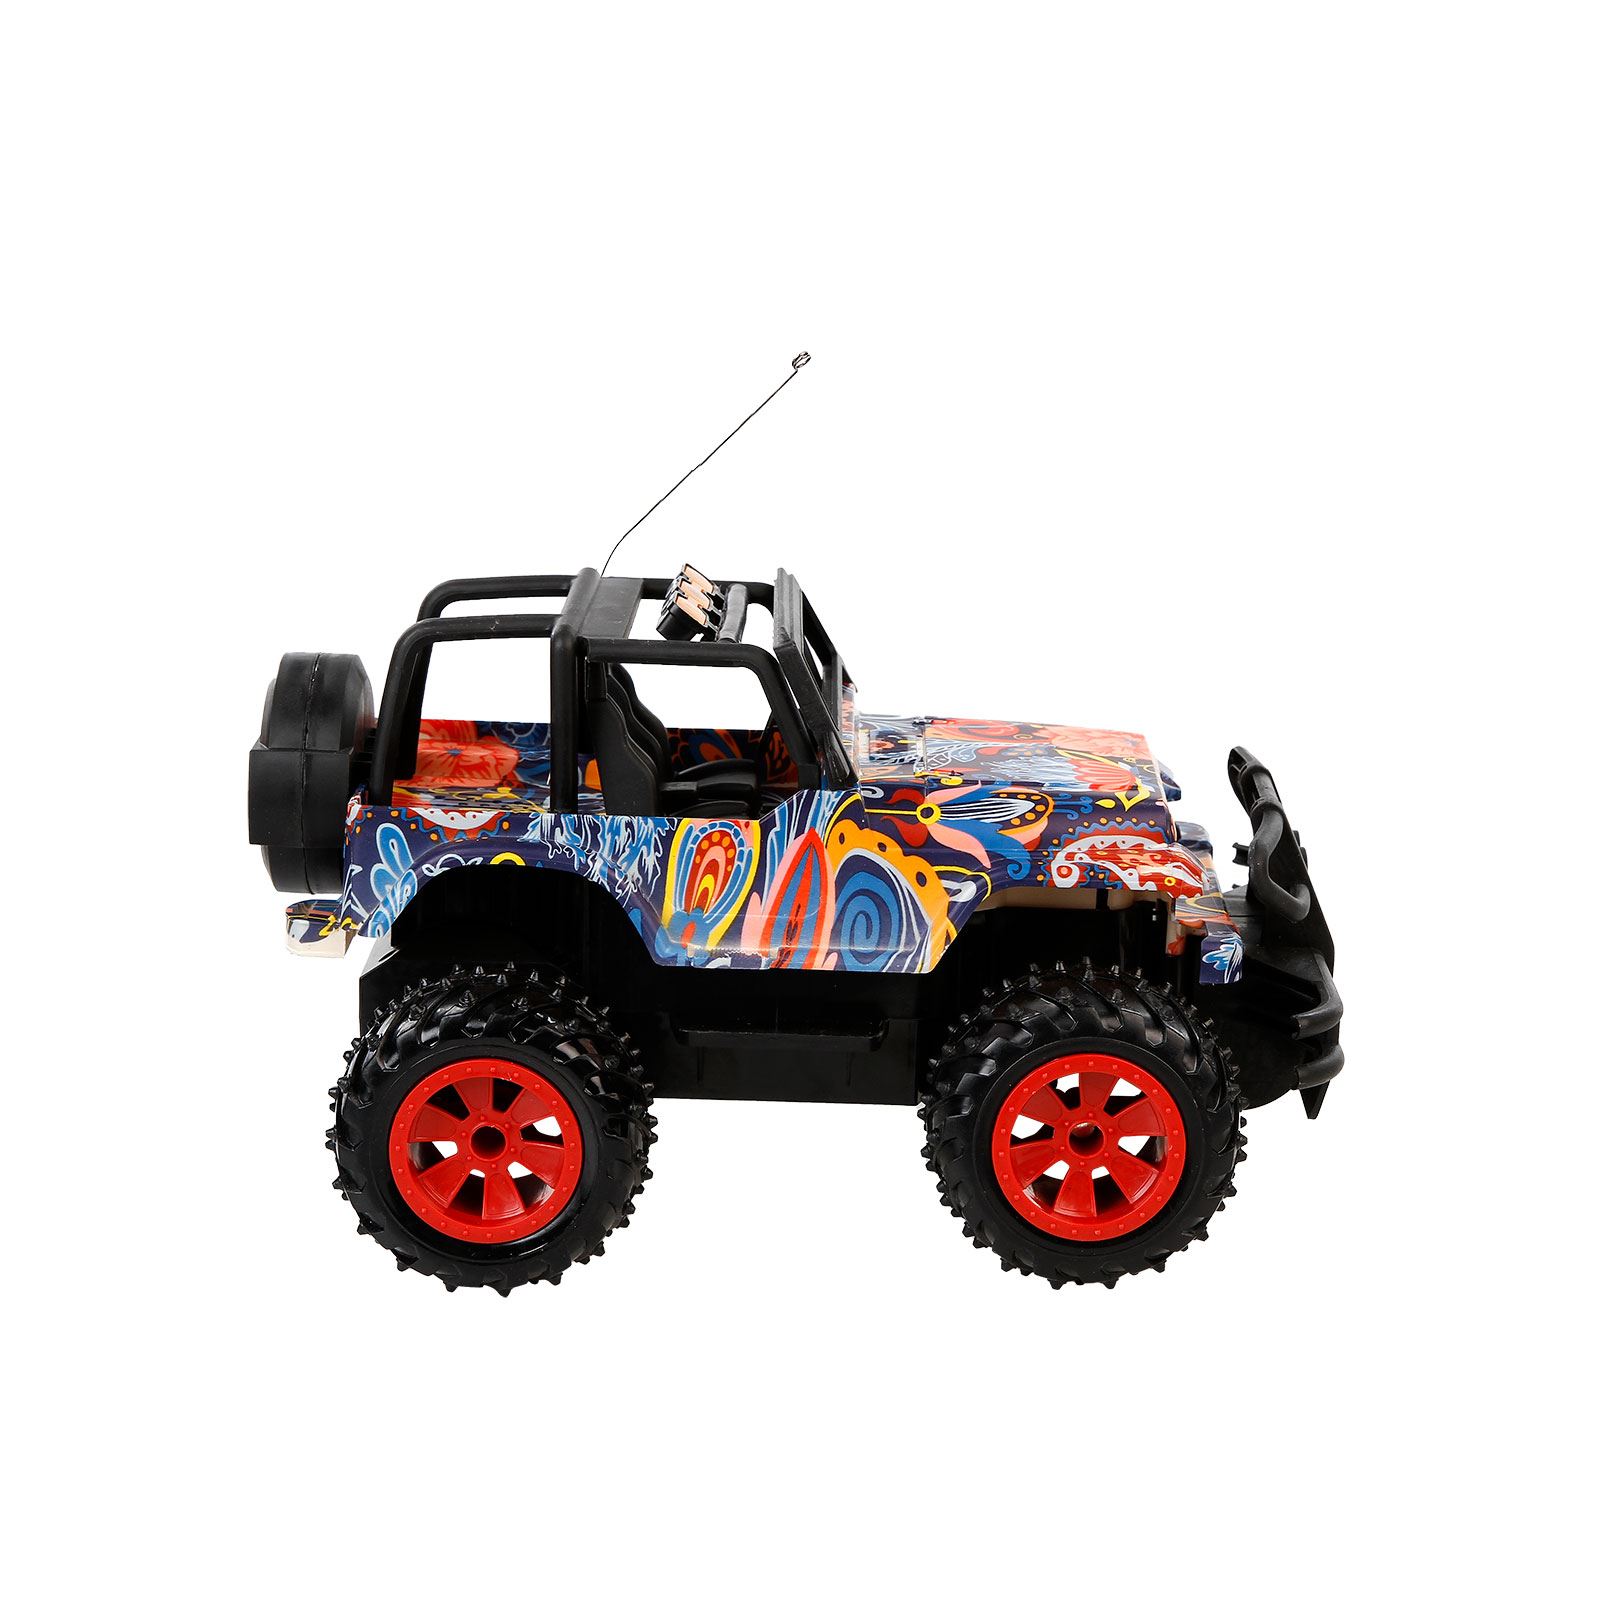 Can Oyuncak Uzaktan Kumandanlı Şarjlı Jeep Mor